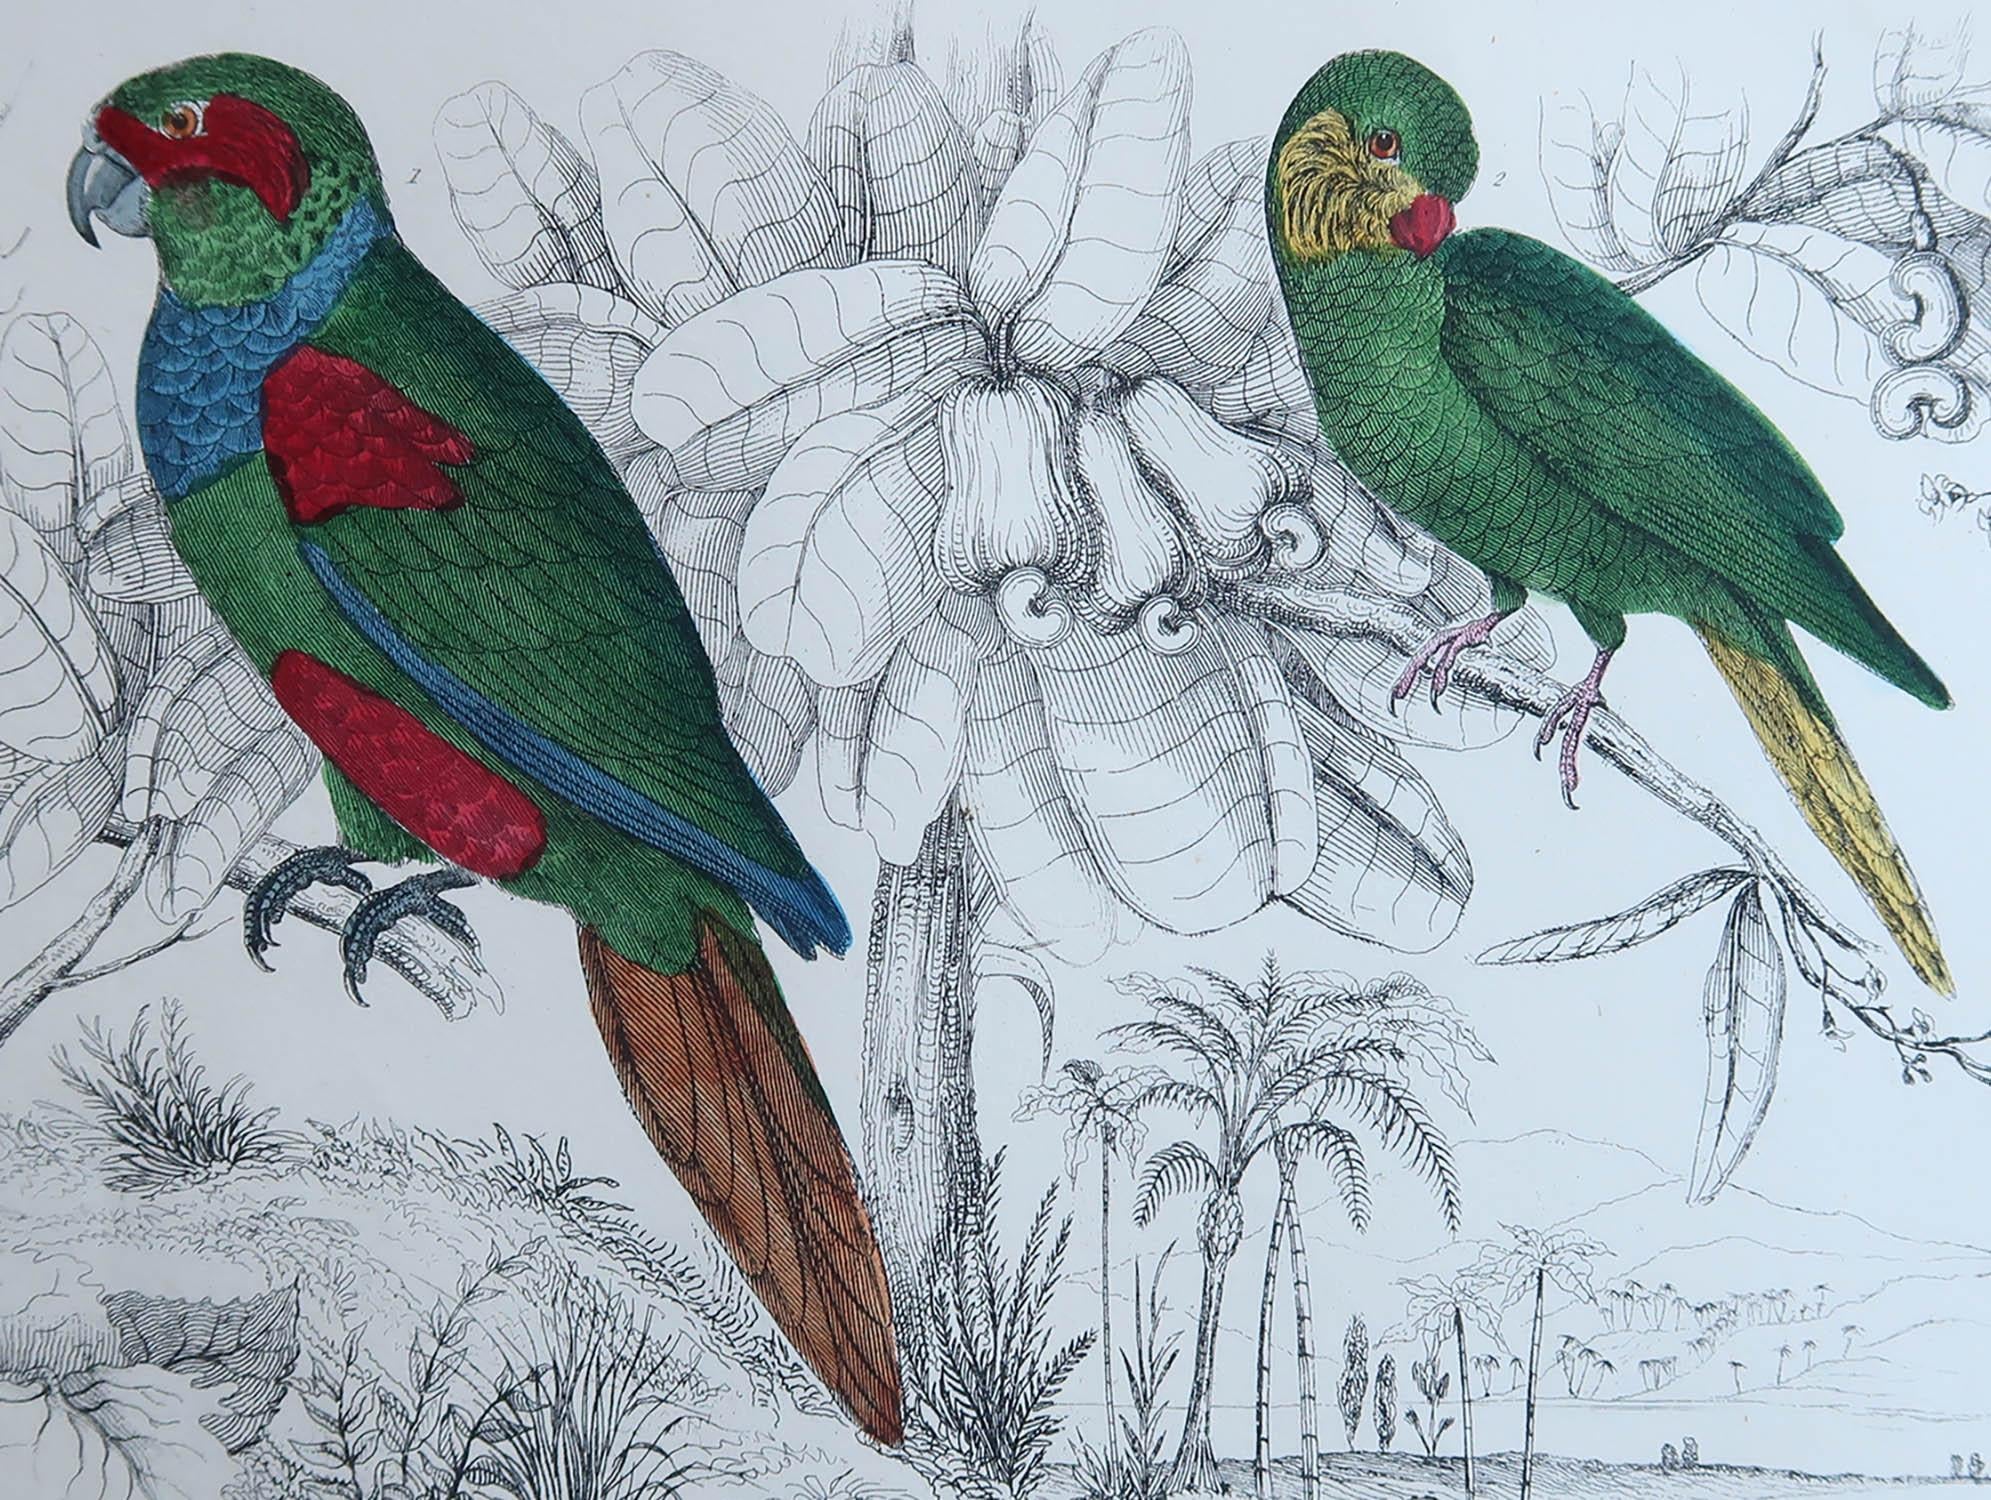 Tolles Bild von Papageien.

Ungerahmt. So haben Sie die Möglichkeit, Ihre eigene Auswahl an Rahmen zu treffen.

Lithographie nach Cpt. Braun mit Original-Handkolorit.

Veröffentlicht, 1847.

Kostenloser Versand.




